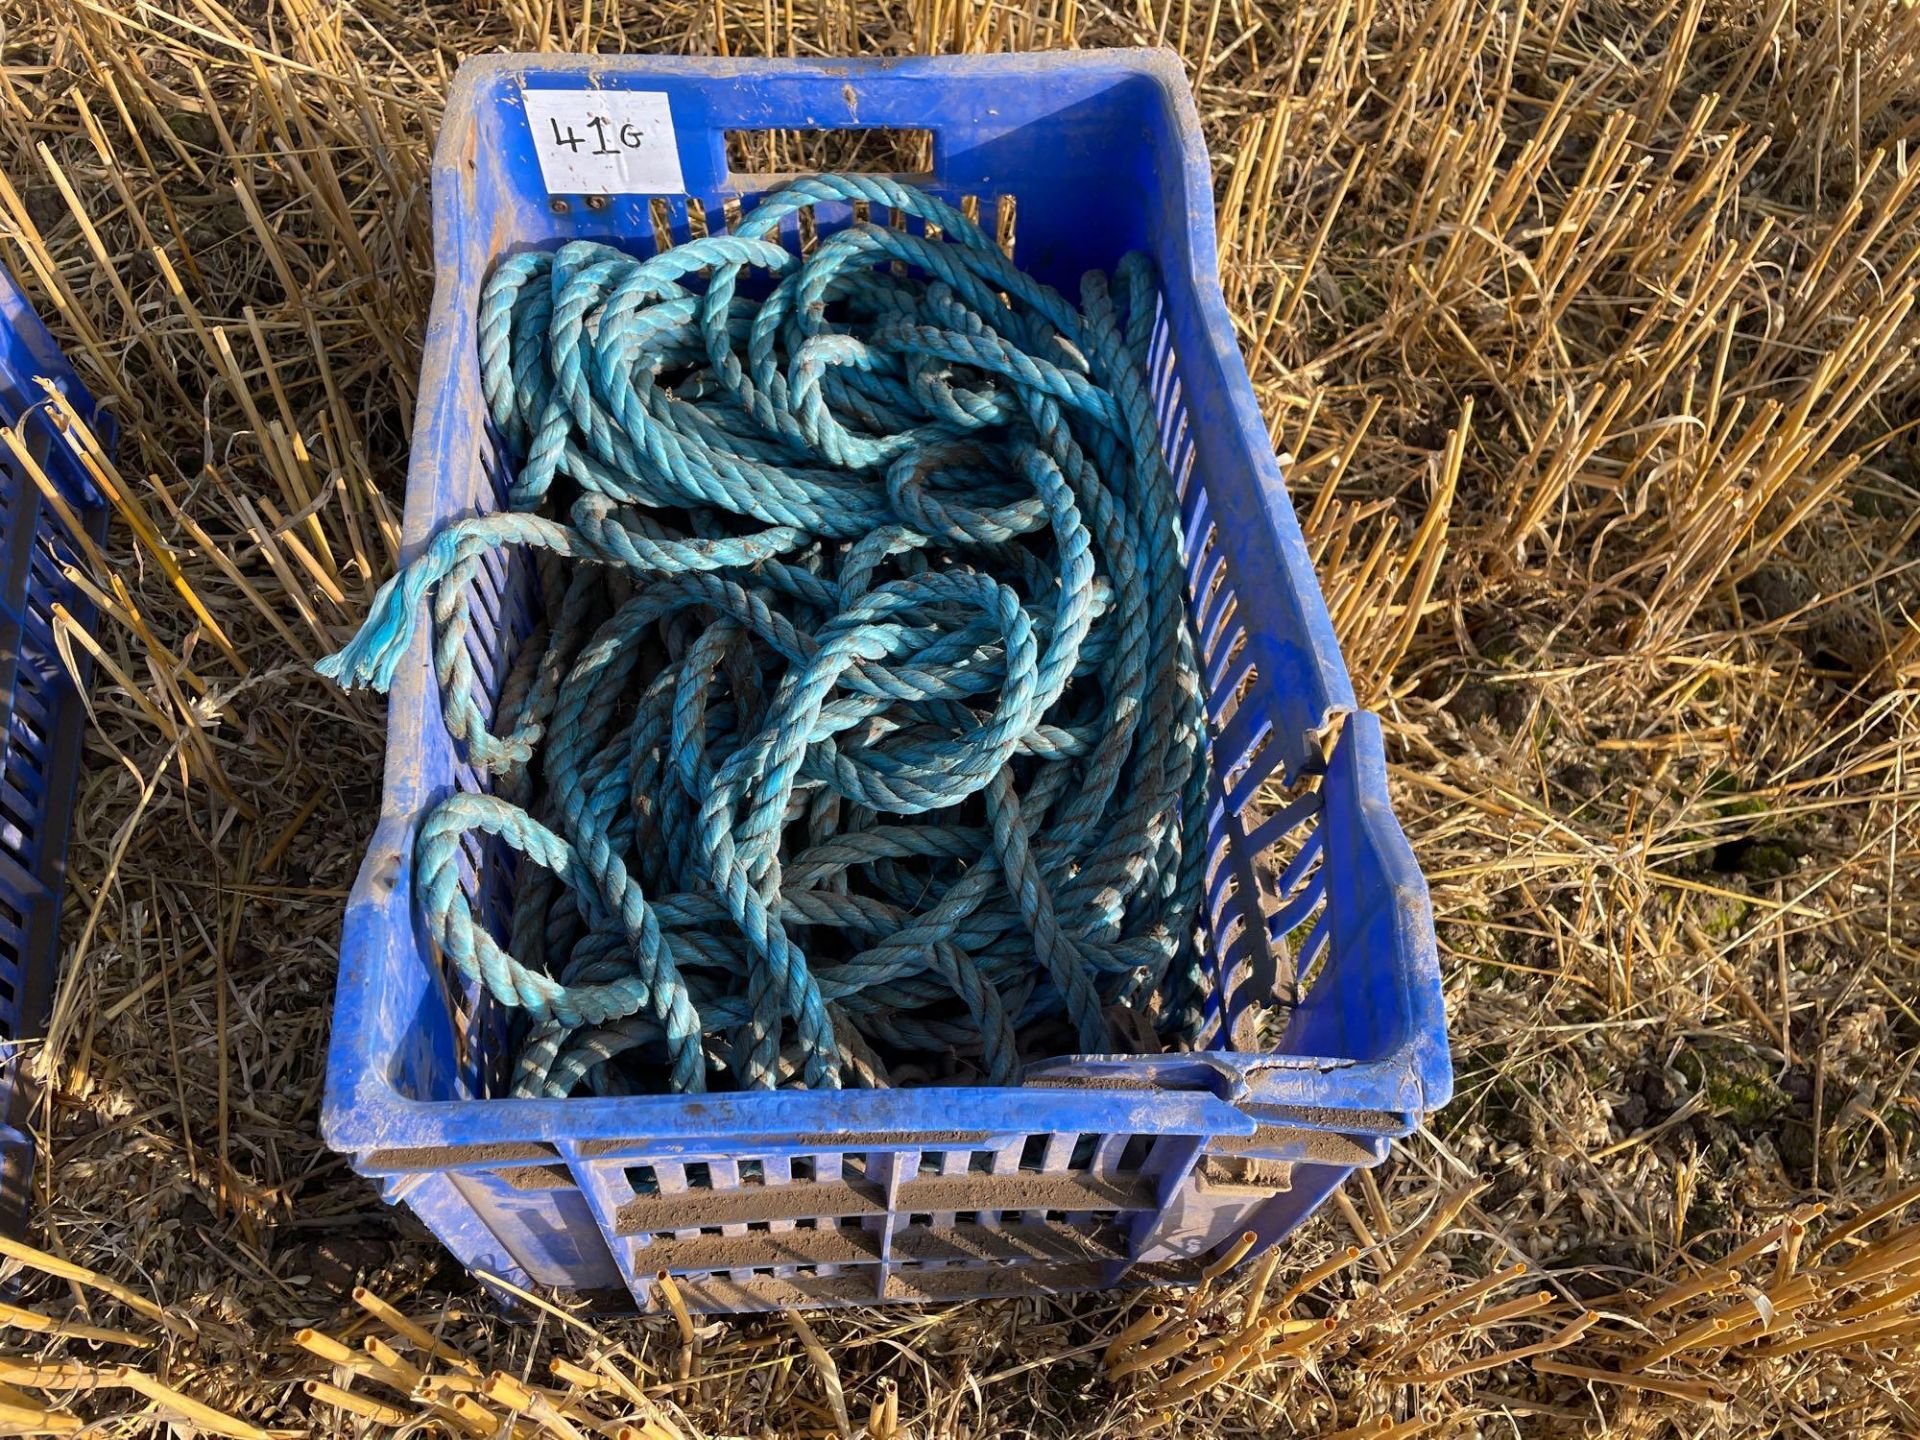 Quantity of rope